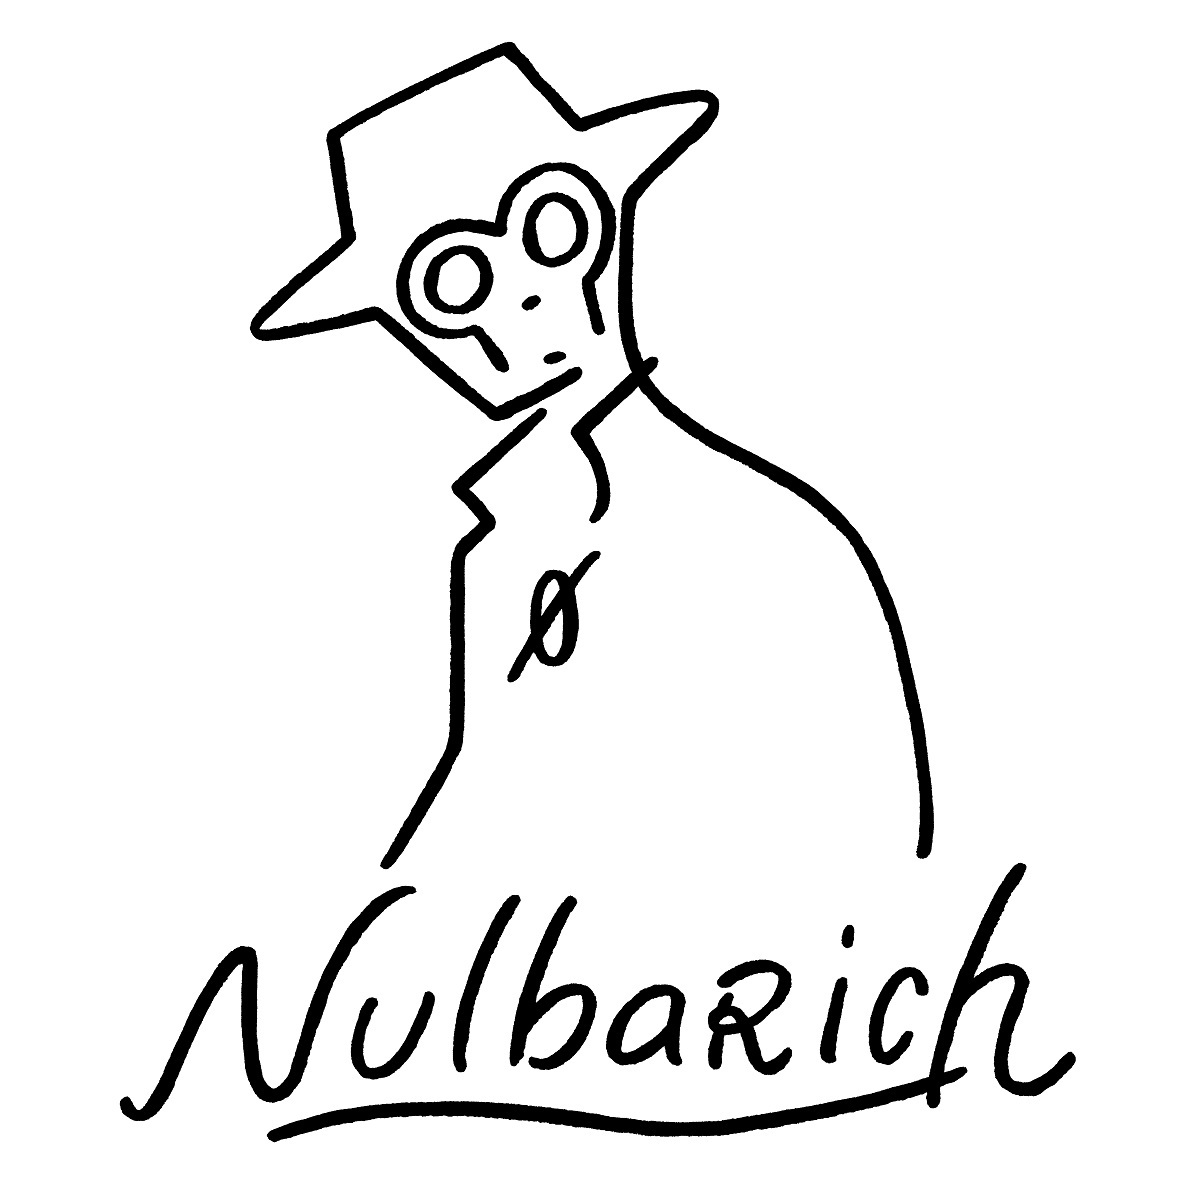 Nulbarich アルバム収録曲 Voice が恋愛リアリティショー 恋愛ドラマな恋がしたい3 主題歌に Spice エンタメ特化型情報メディア スパイス